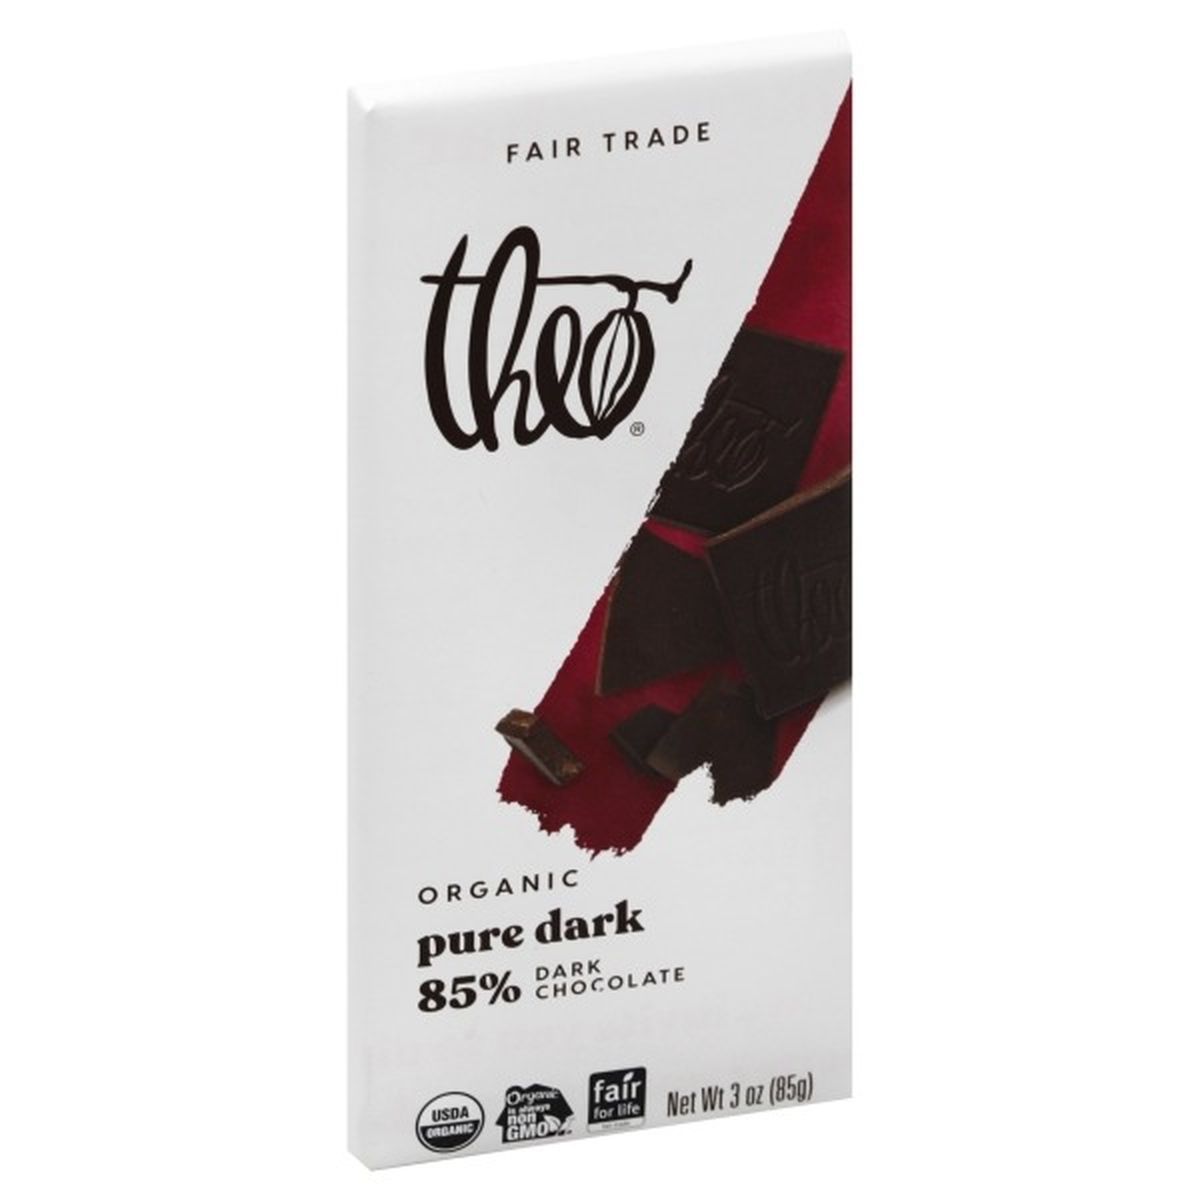 Calories in Theo Chocolate Dark Chocolate, Organic, Pure Dark, 85%